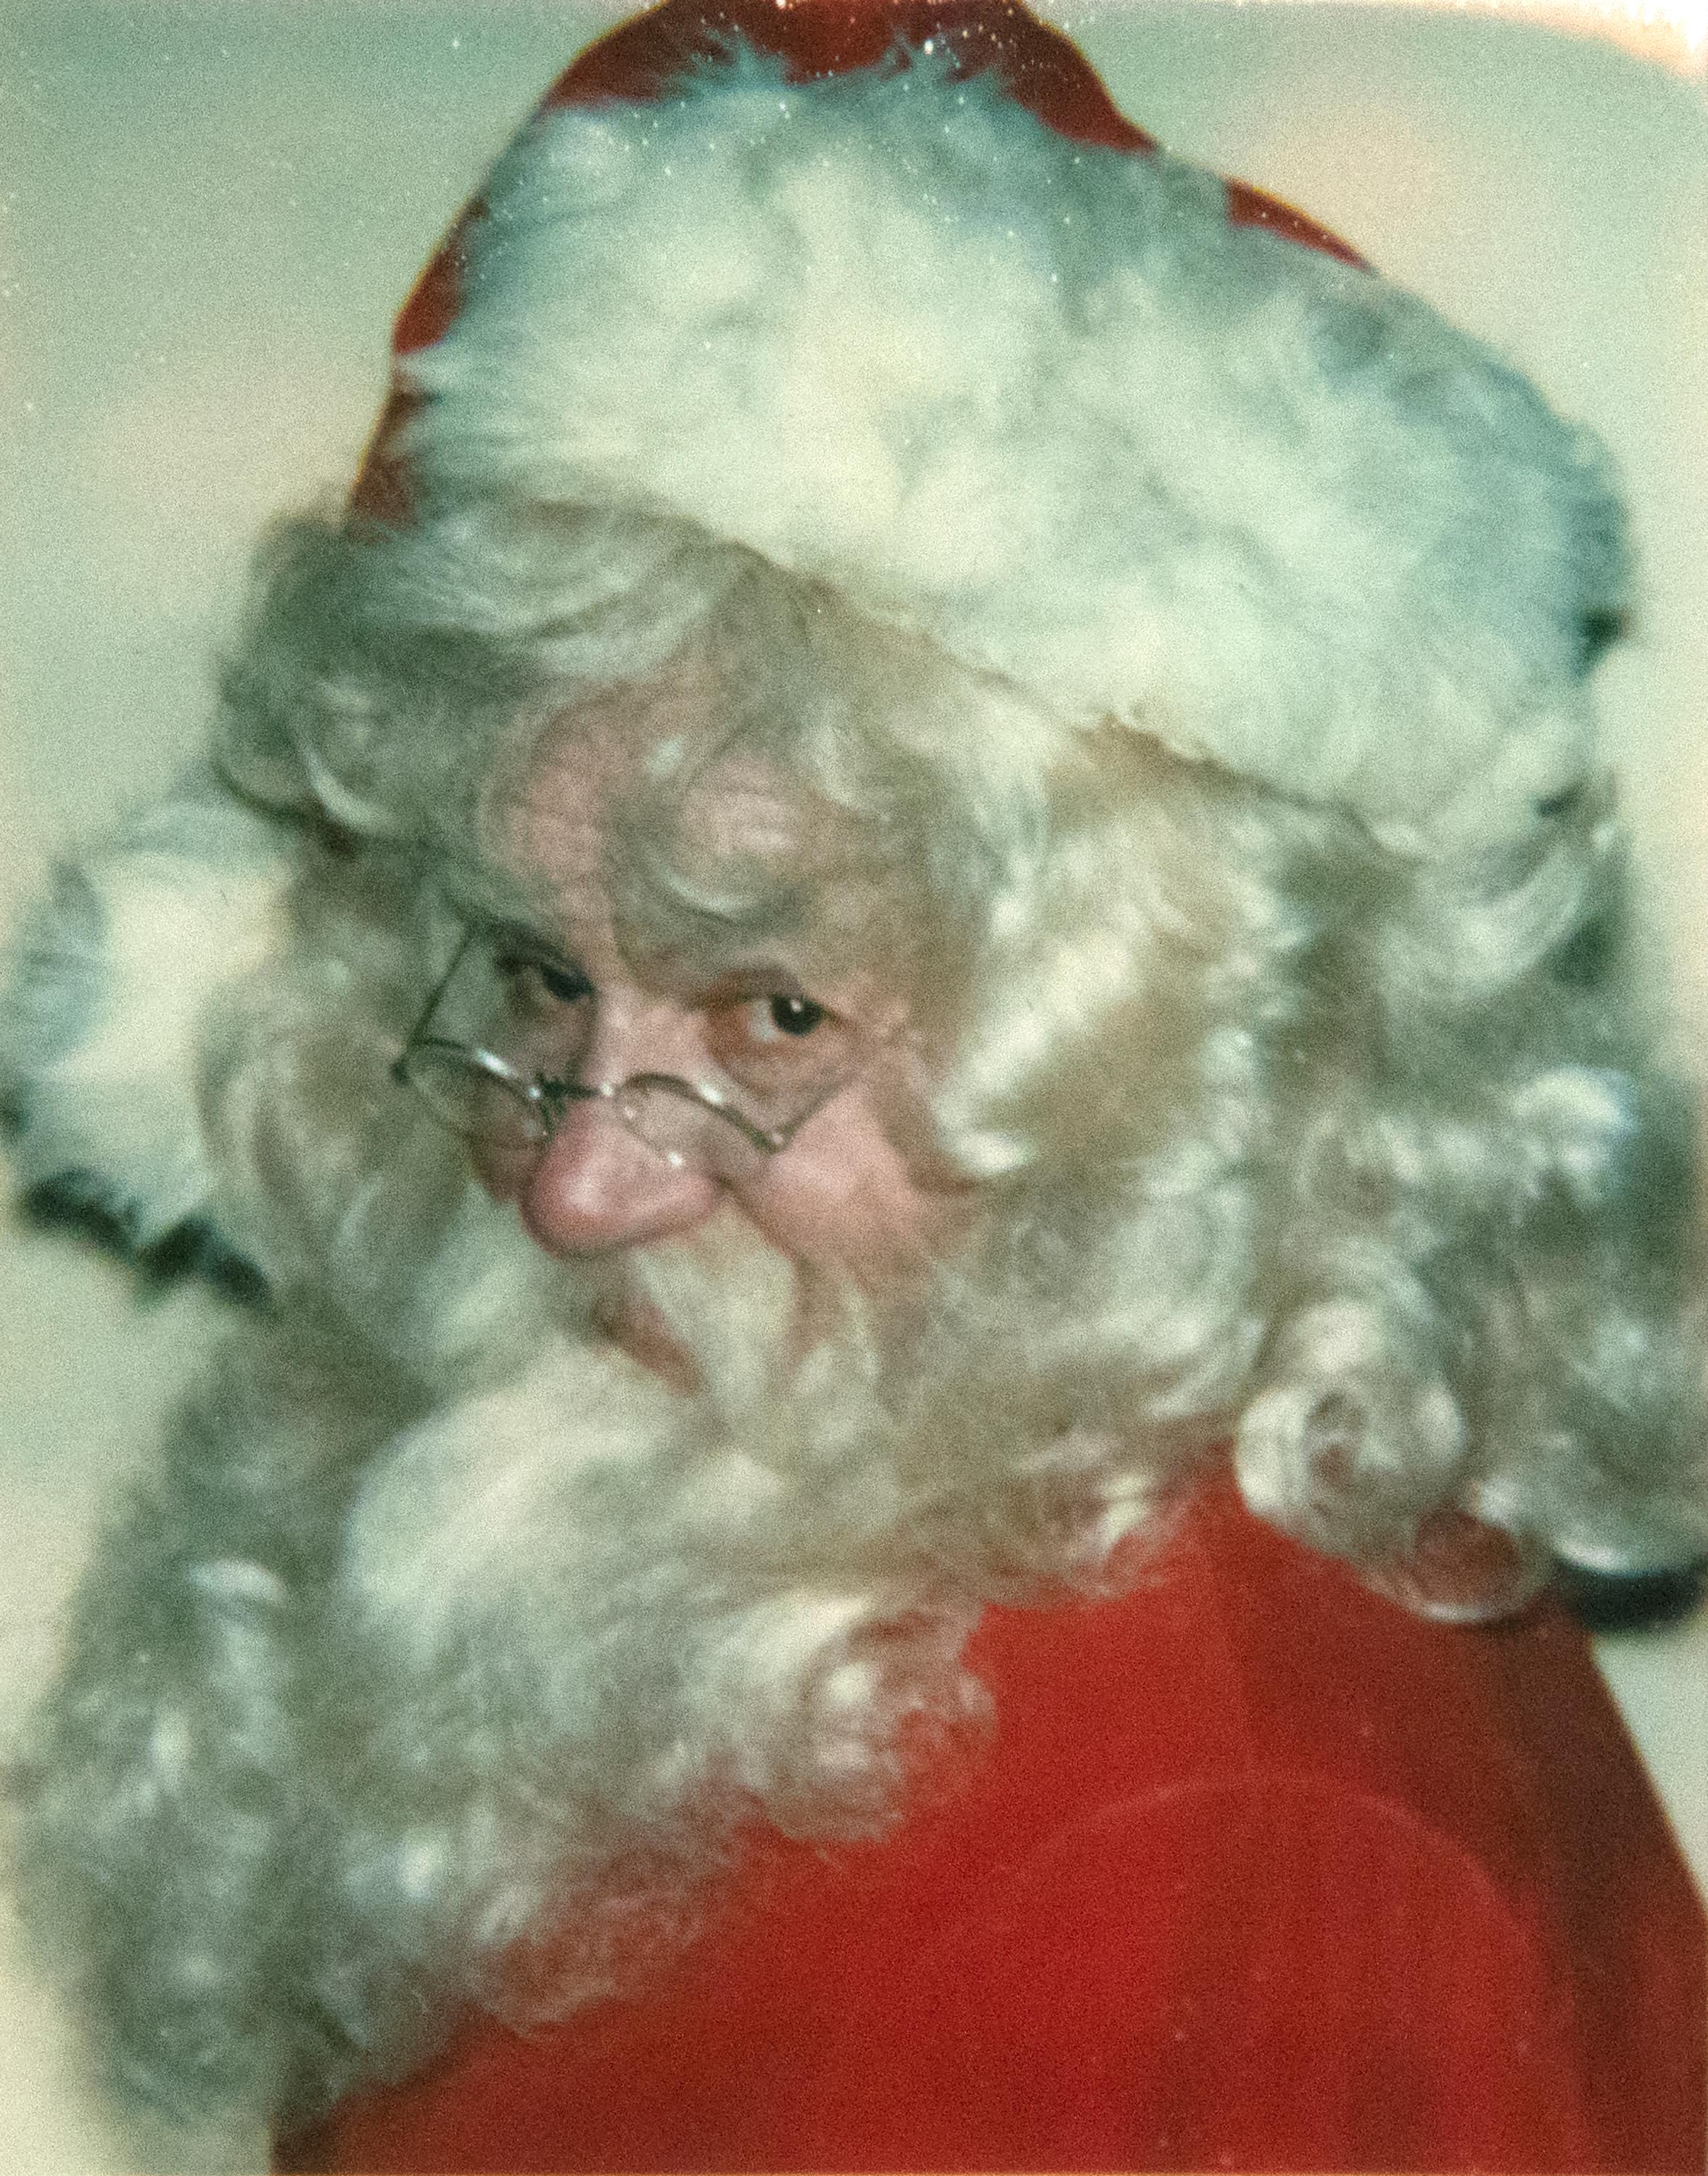 Andy Warhol Color Photograph - Myths (Santa)